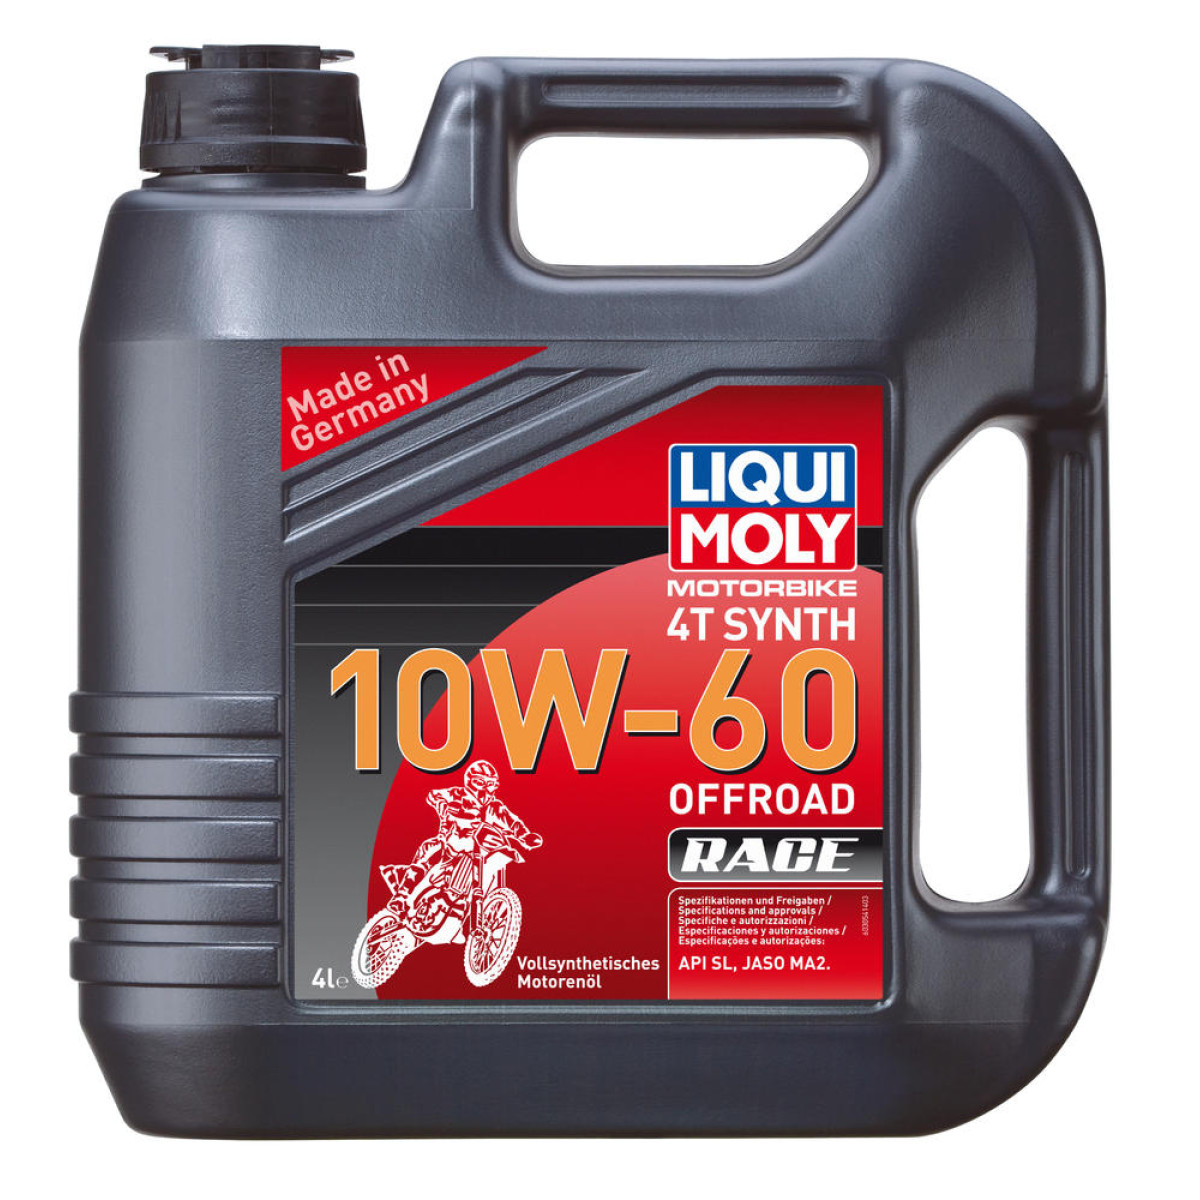 Liqui Moly Motor Oil Offroad Race 10W60, 4 Liter